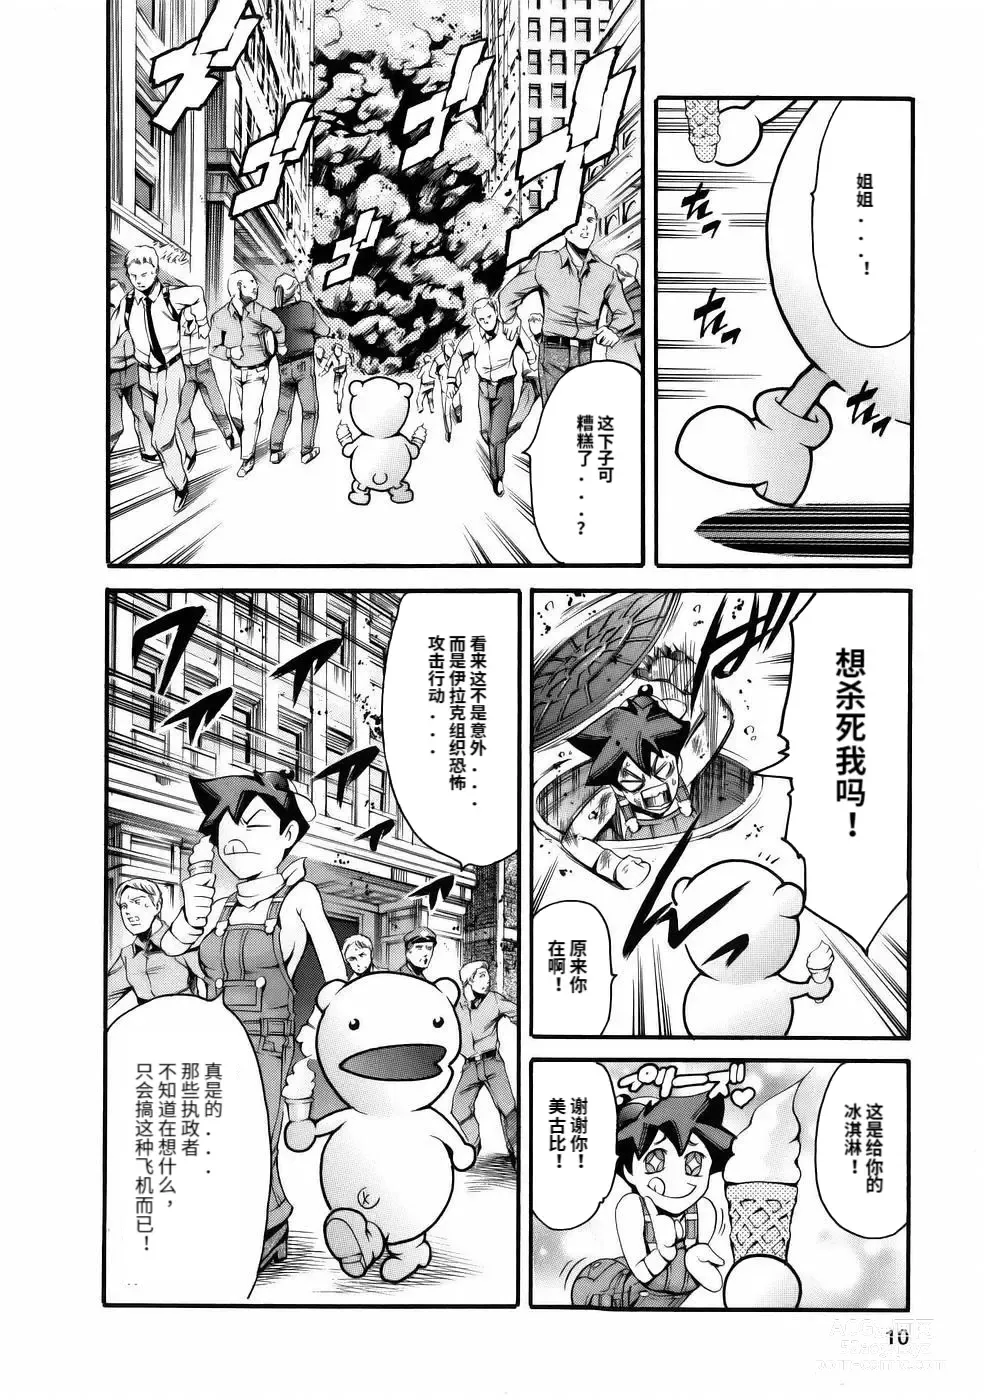 Page 12 of manga Manga Naze Nani Kyoushitsu